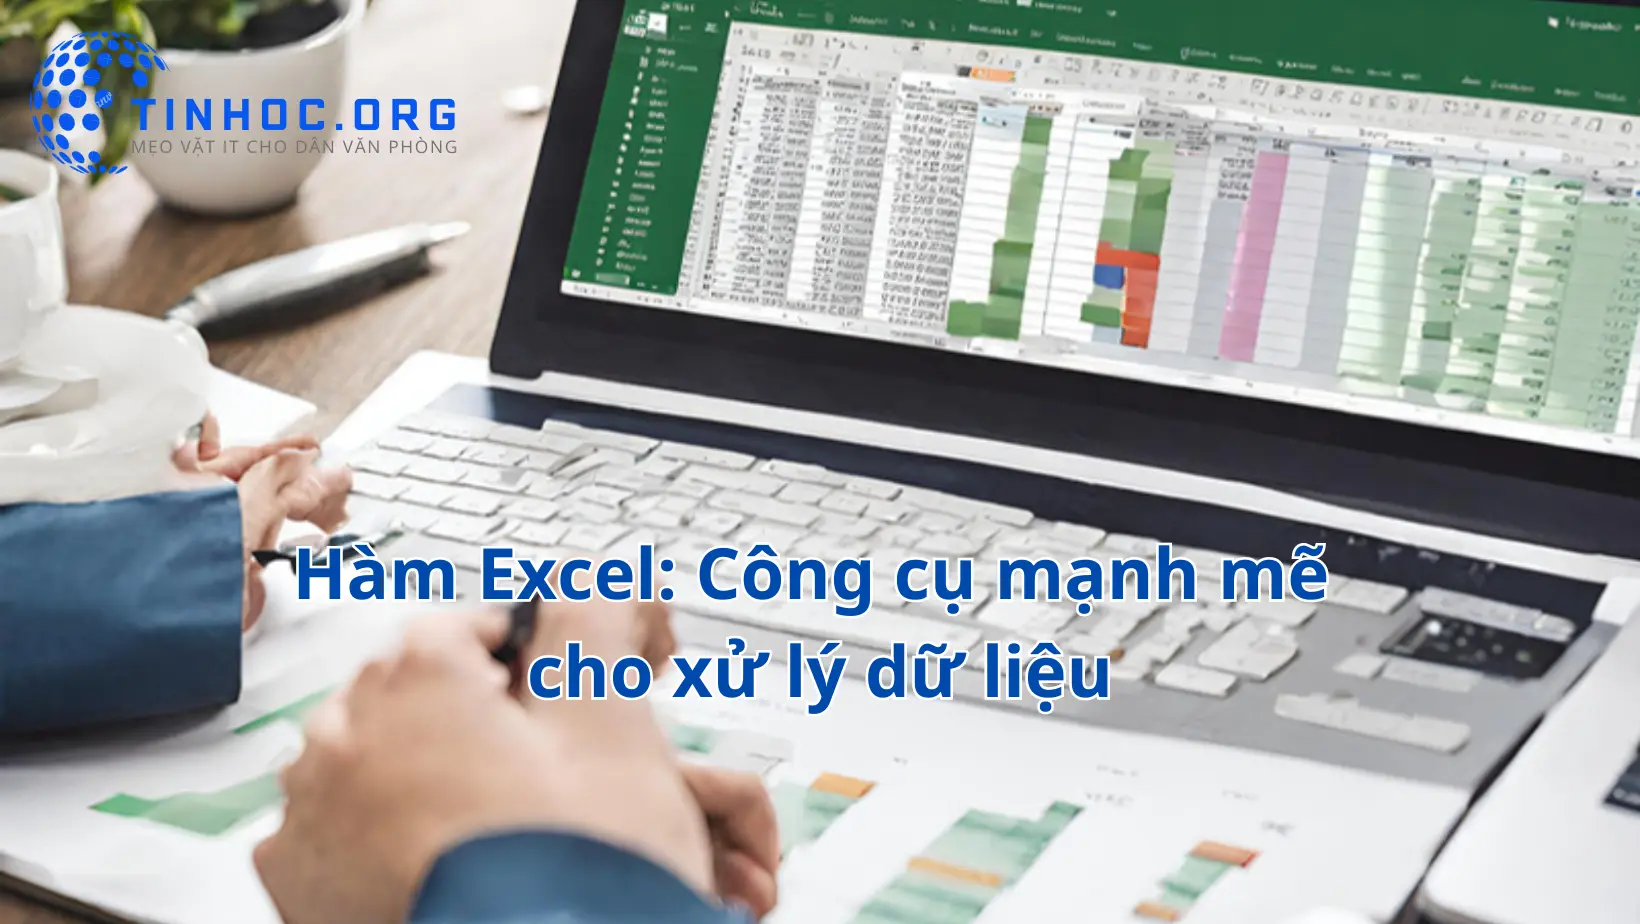 Giới thiệu về hàm trong Microsoft Excel, các loại hàm phổ biến và cơ bản, các hàm phức tạp và nâng cao, và các hàm phân tích dữ liệu và thống kê.